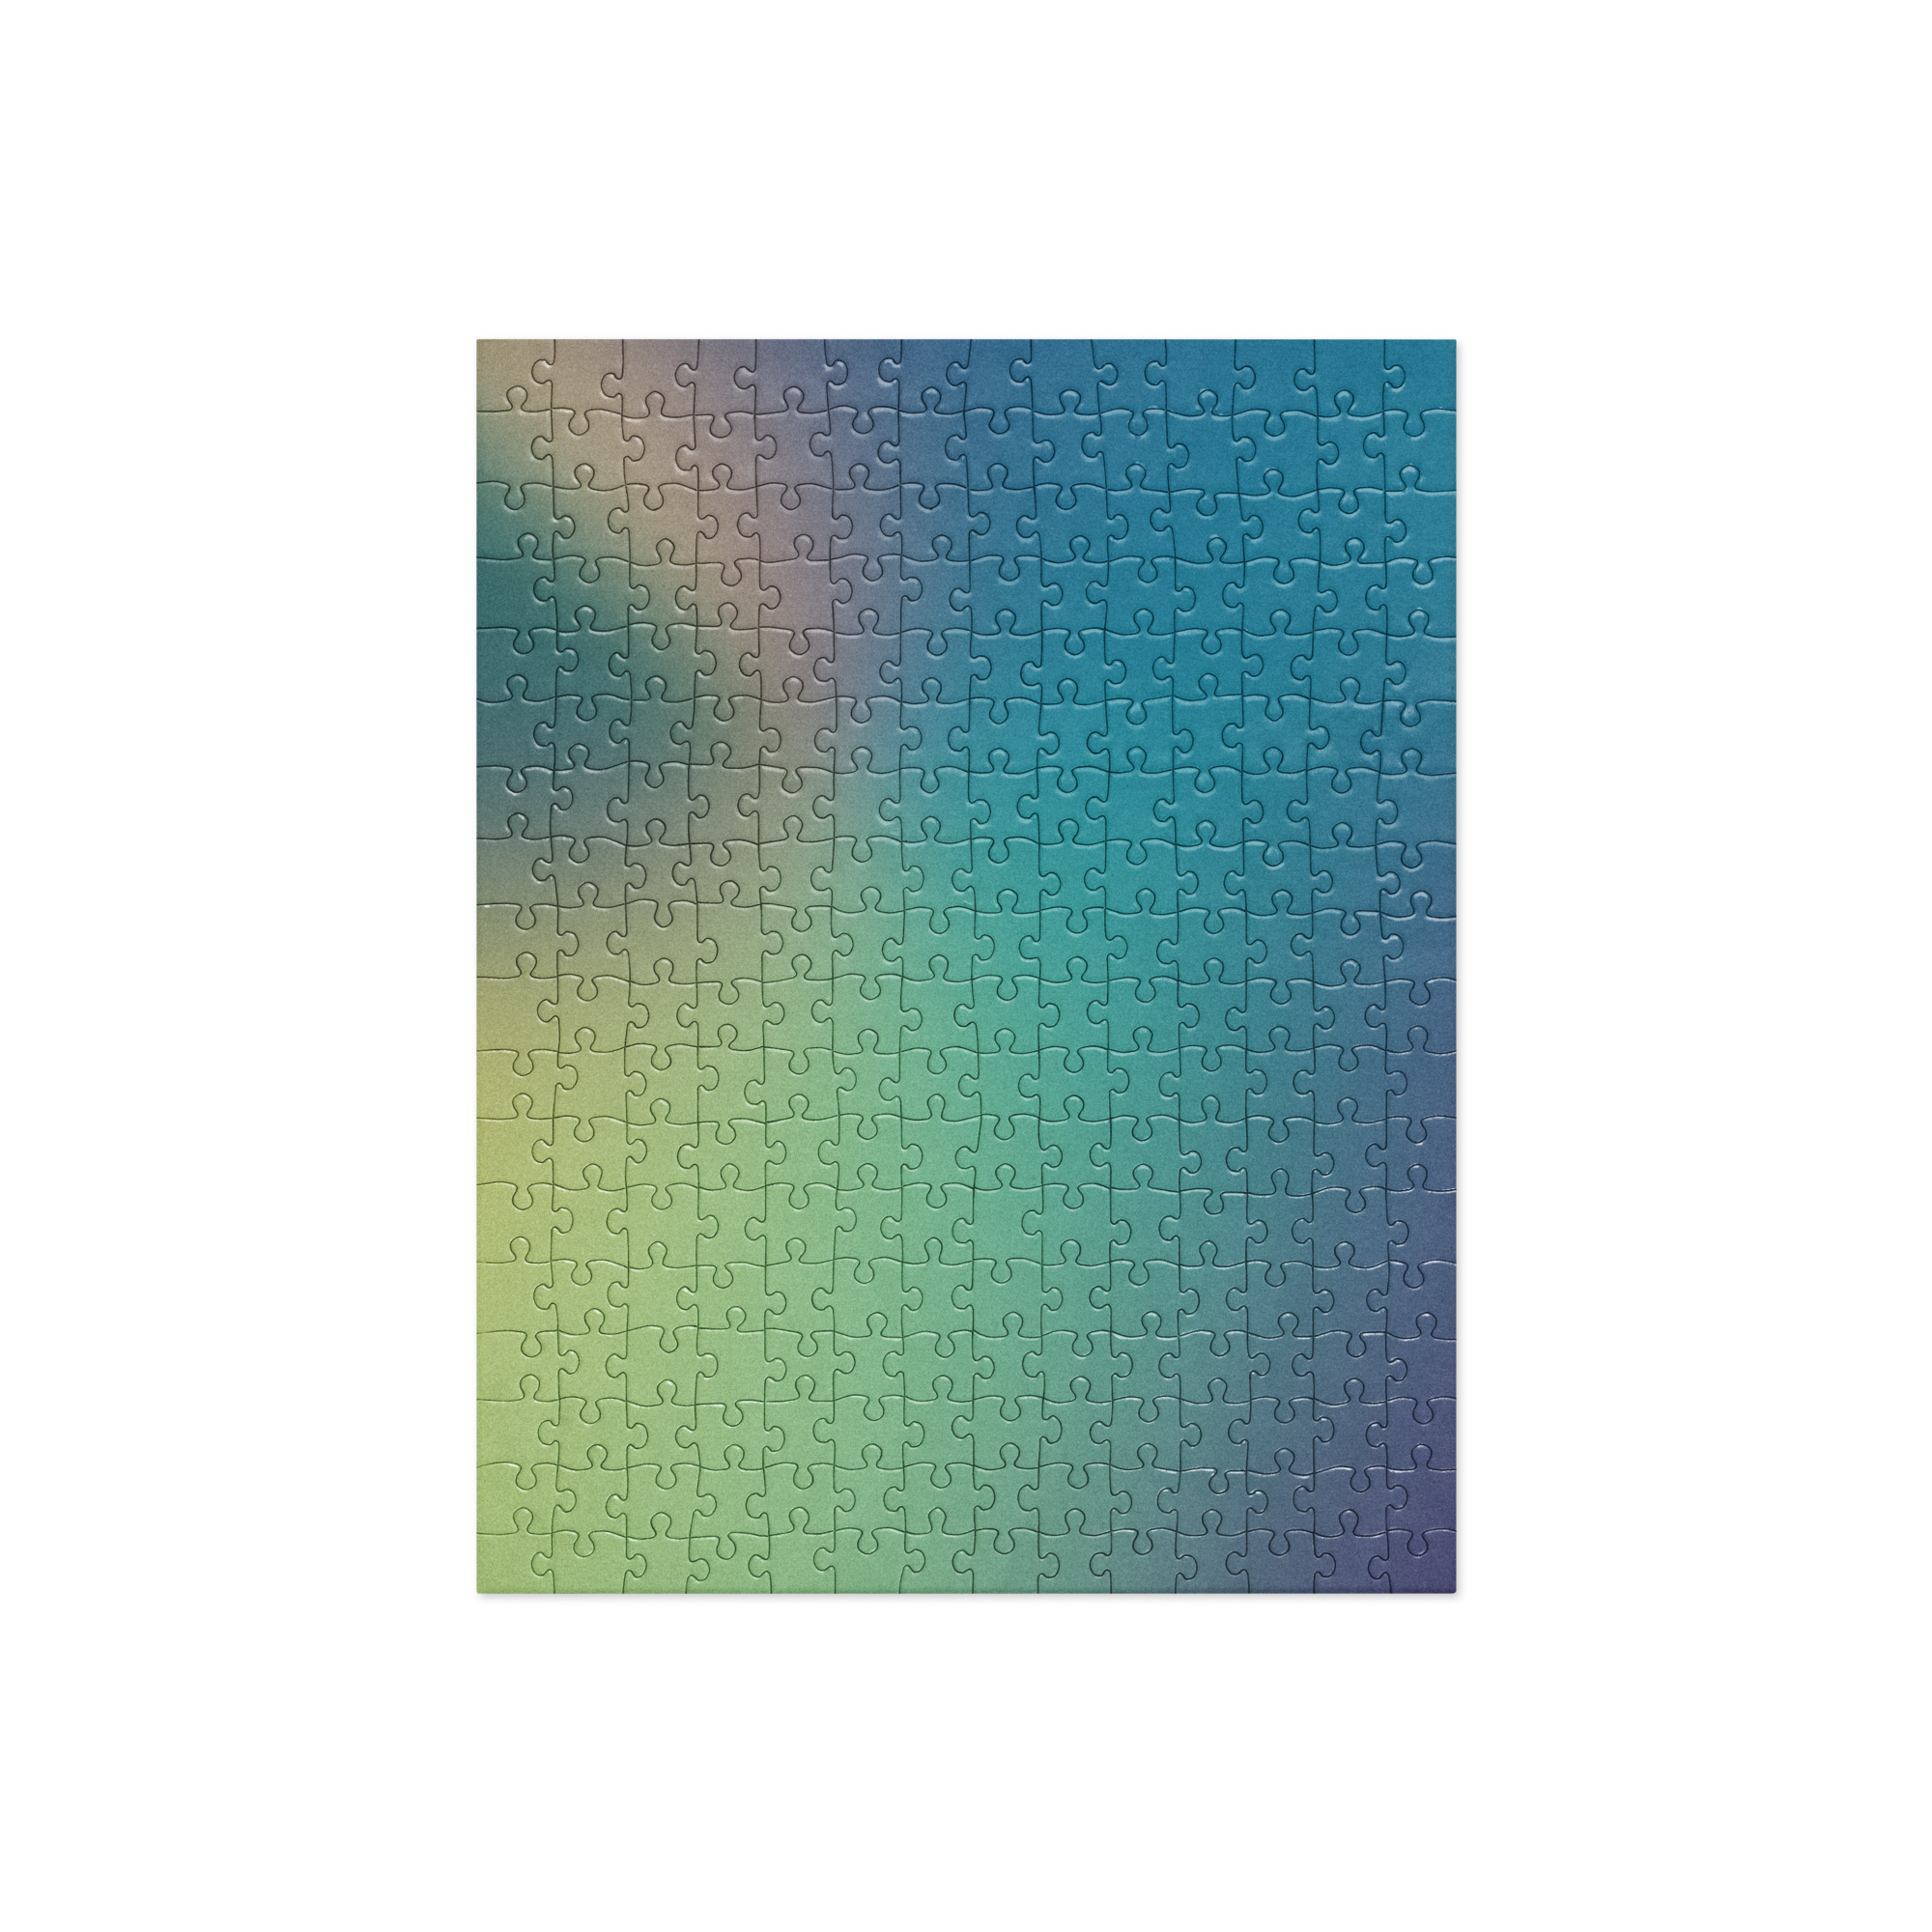 Hypernormal Hazy Gradient v8.0 Puzzle